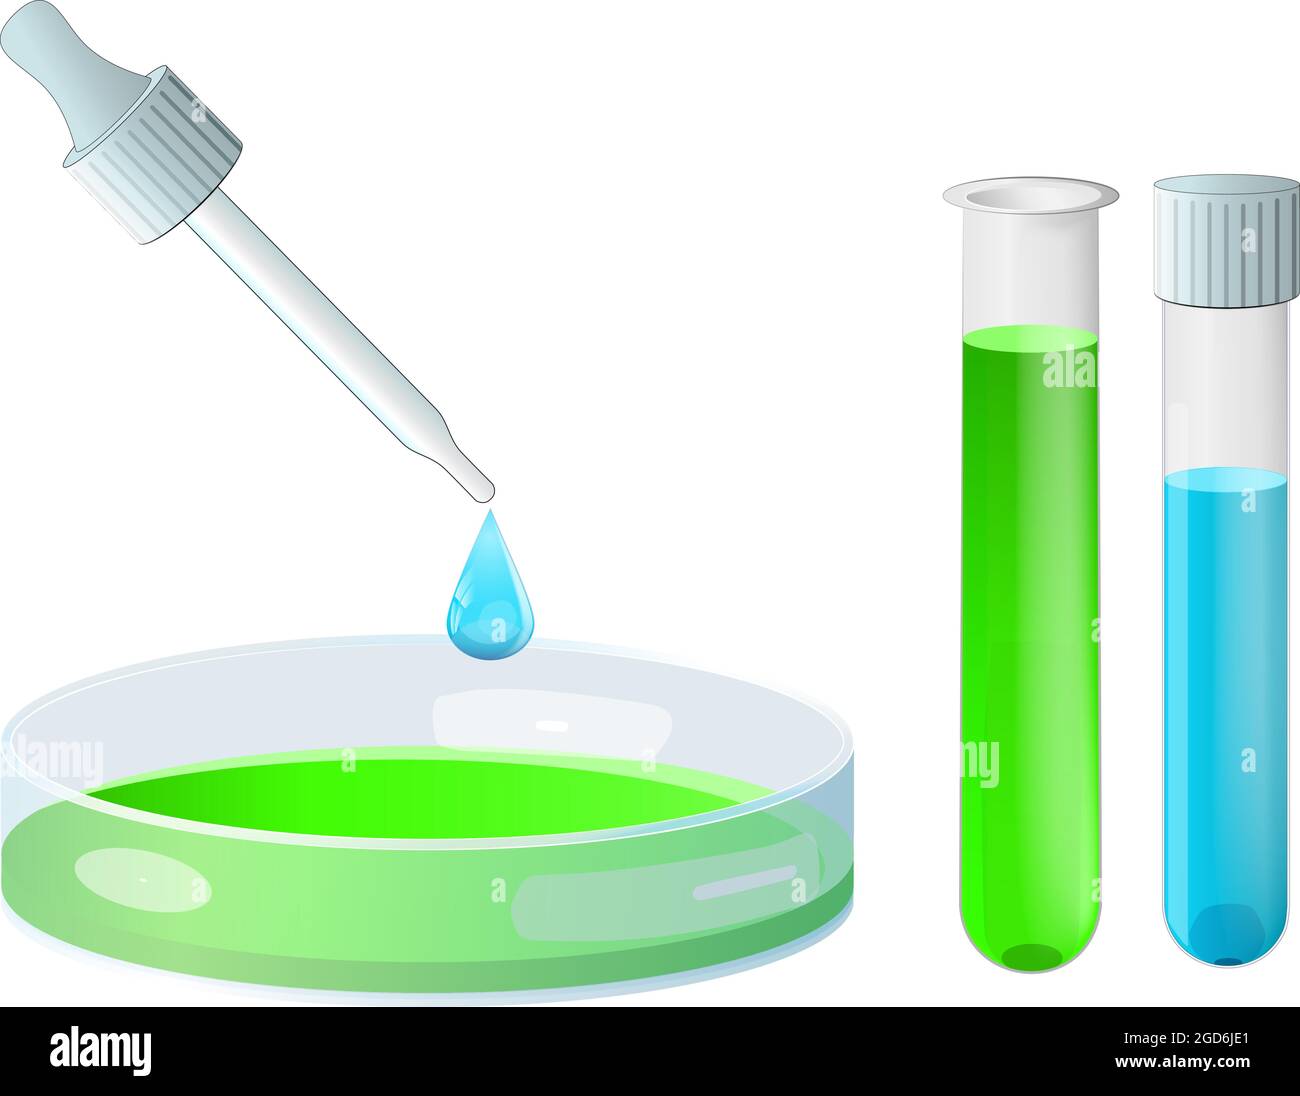 Piastra Petri e pipetta, vetro da laboratorio e provetta per analisi. Gocce di liquido blu. Strumenti di laboratorio per la ricerca microbiologica o biotecnologica. Scienza Illustrazione Vettoriale